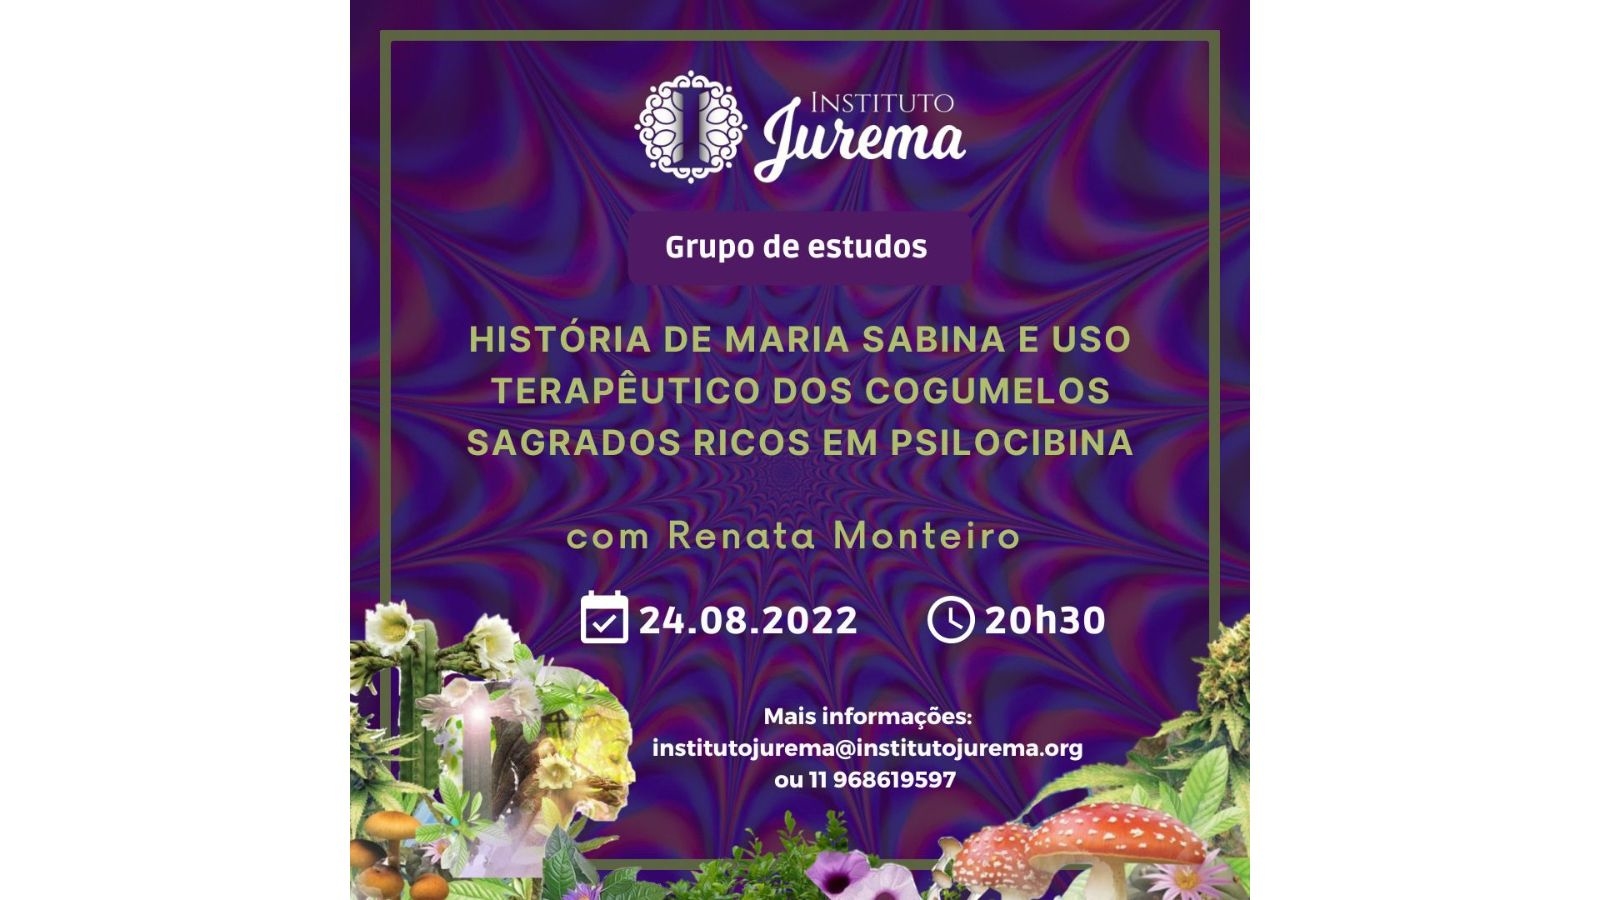 Instituto Jurema 1600 x 900 (1)